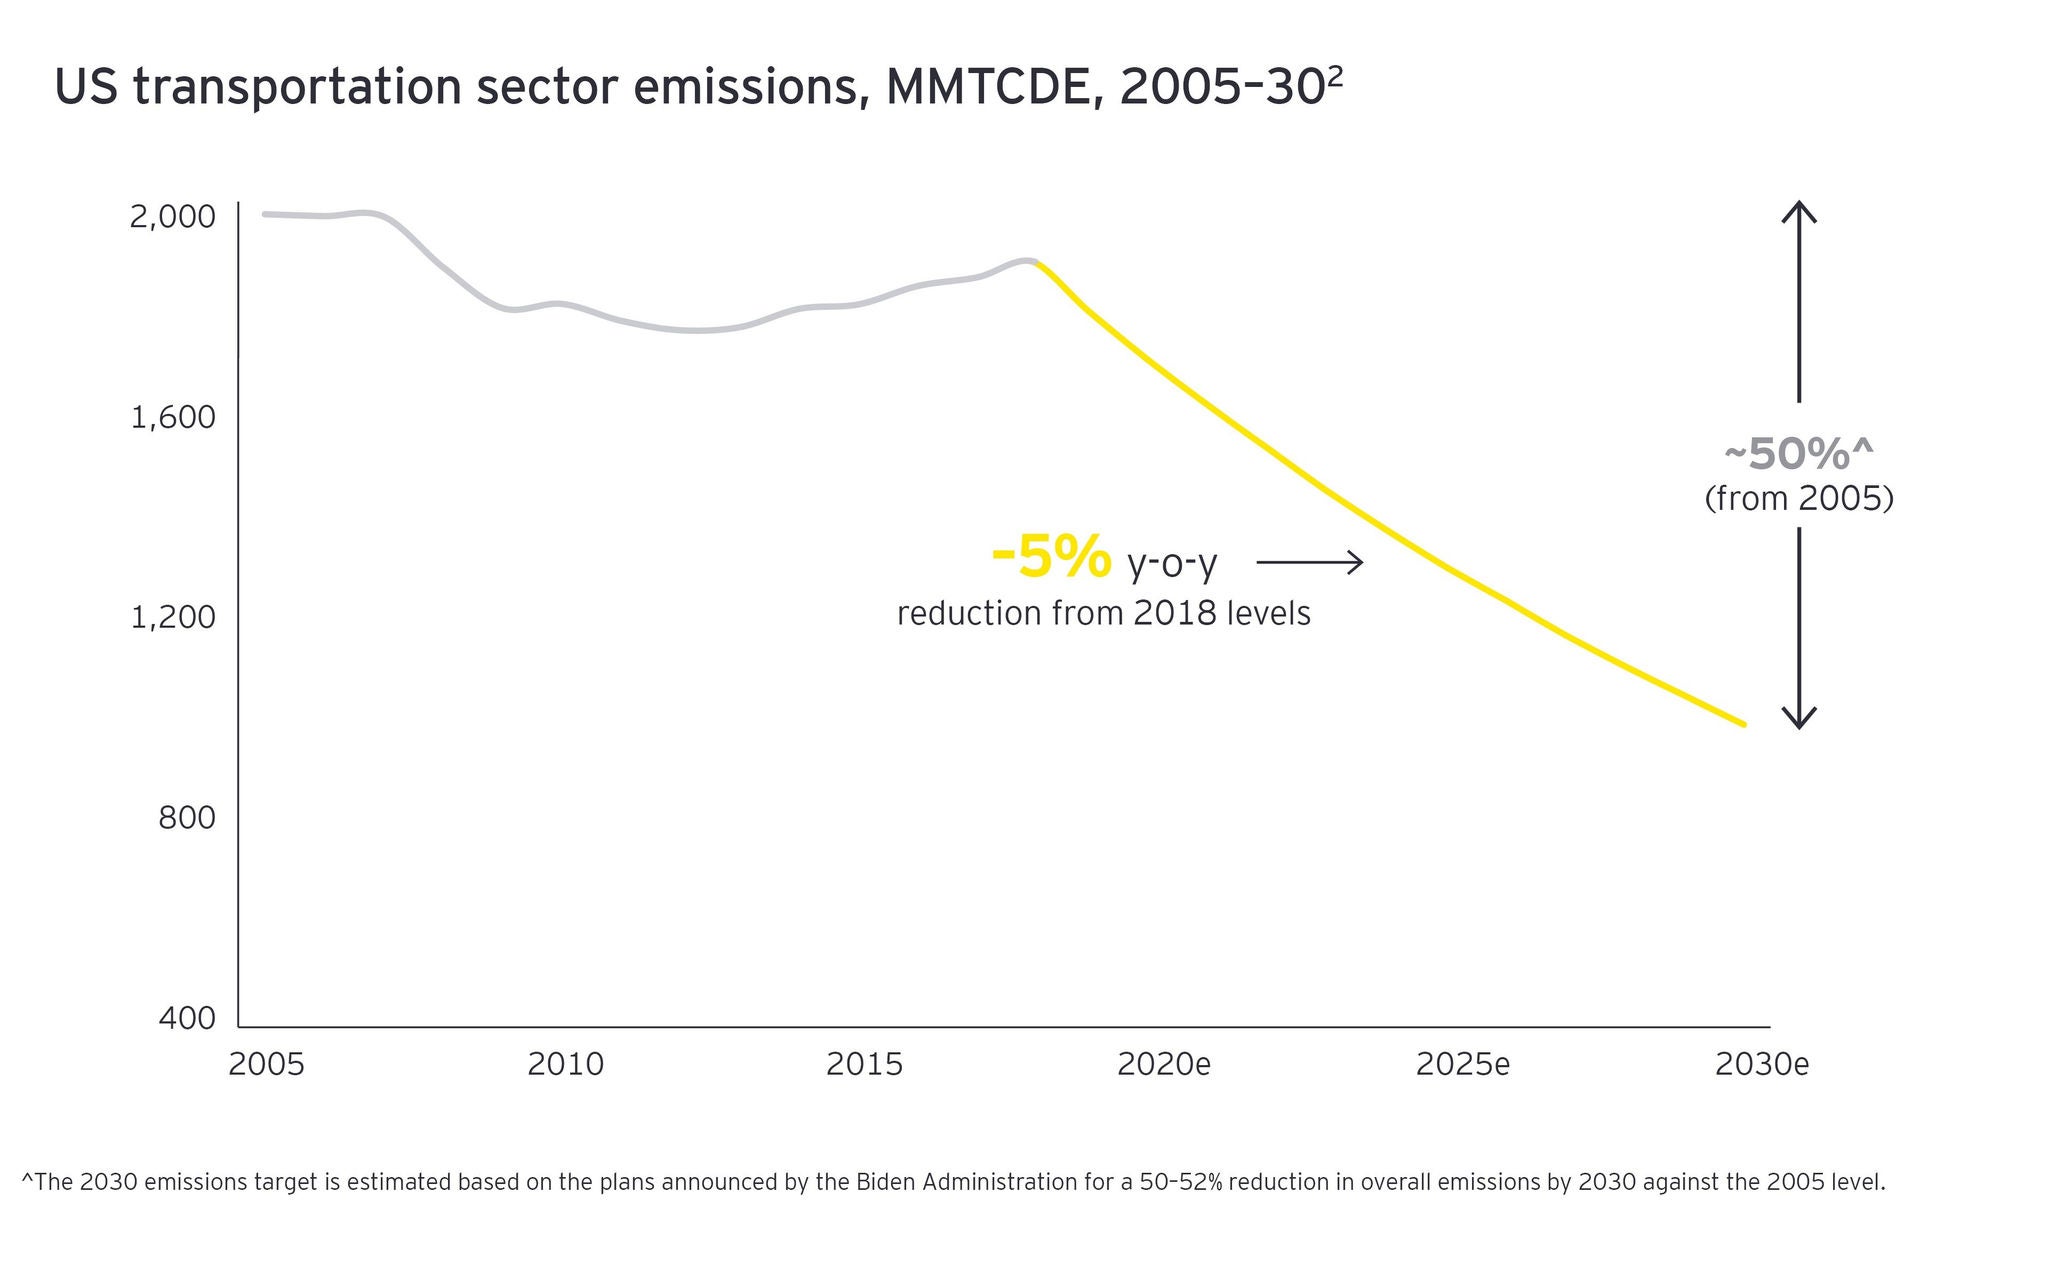 ey-us-transportation-sector-emissions